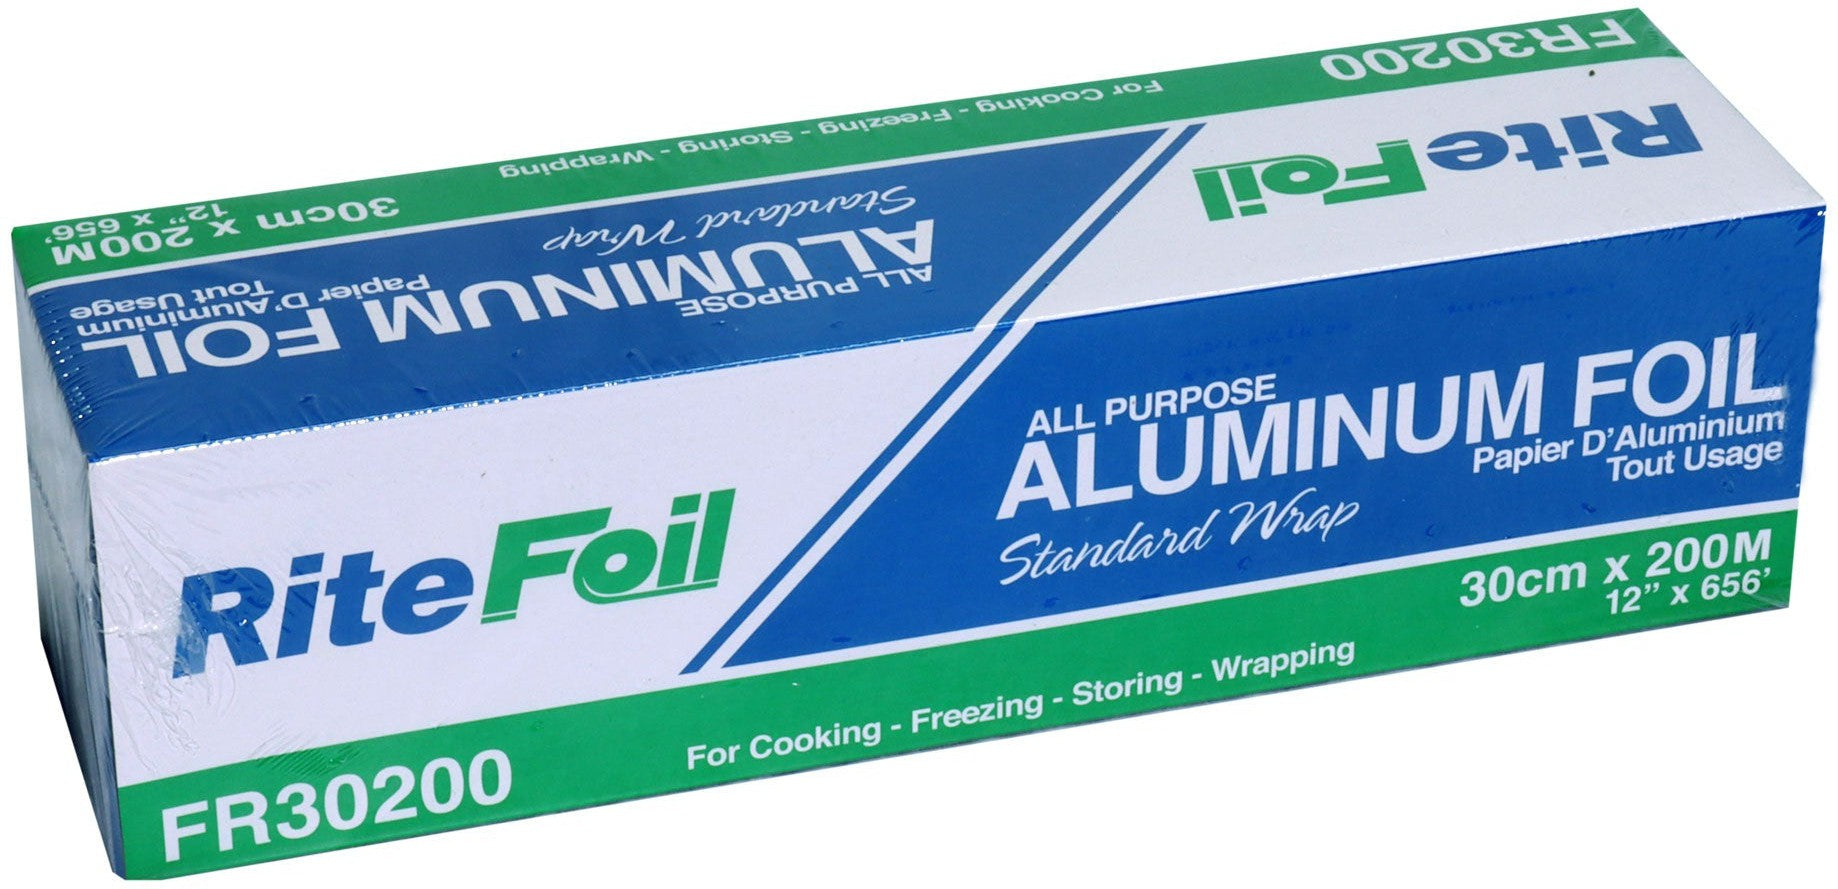 RiteFoil - 30cm X 200m Aluminum Foil Roll, 6rl/Cs - FR30200